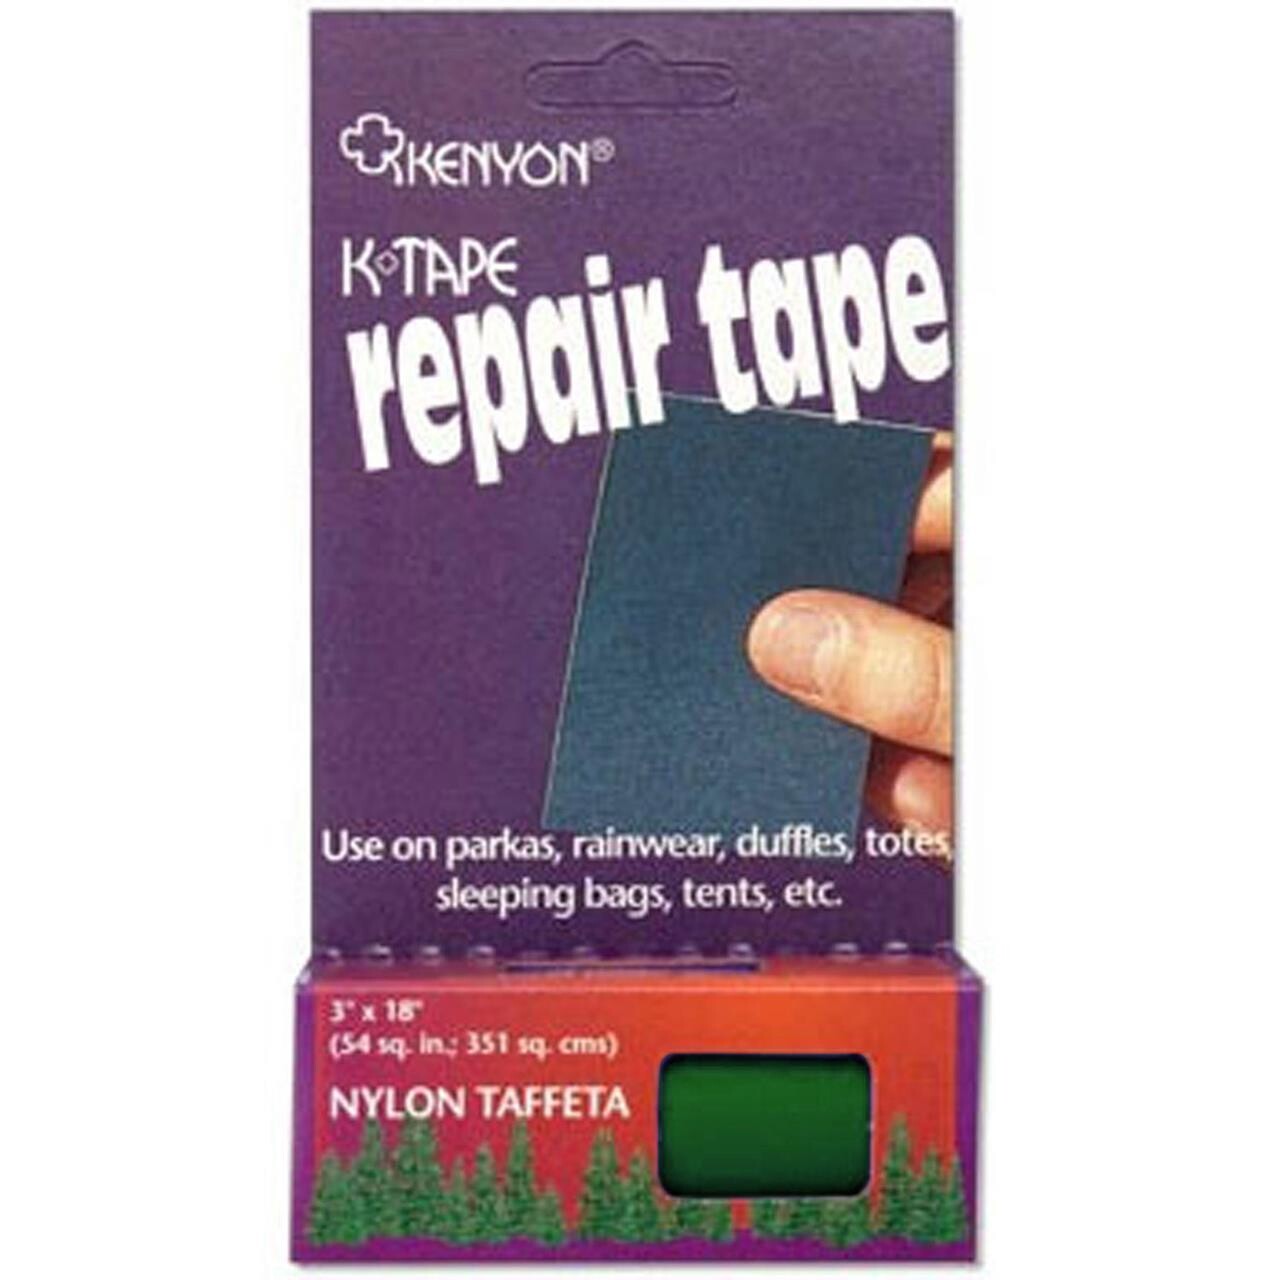 Kenyon Repair tape Ripstop 3x18" (Grøn (FORESTGREEN))